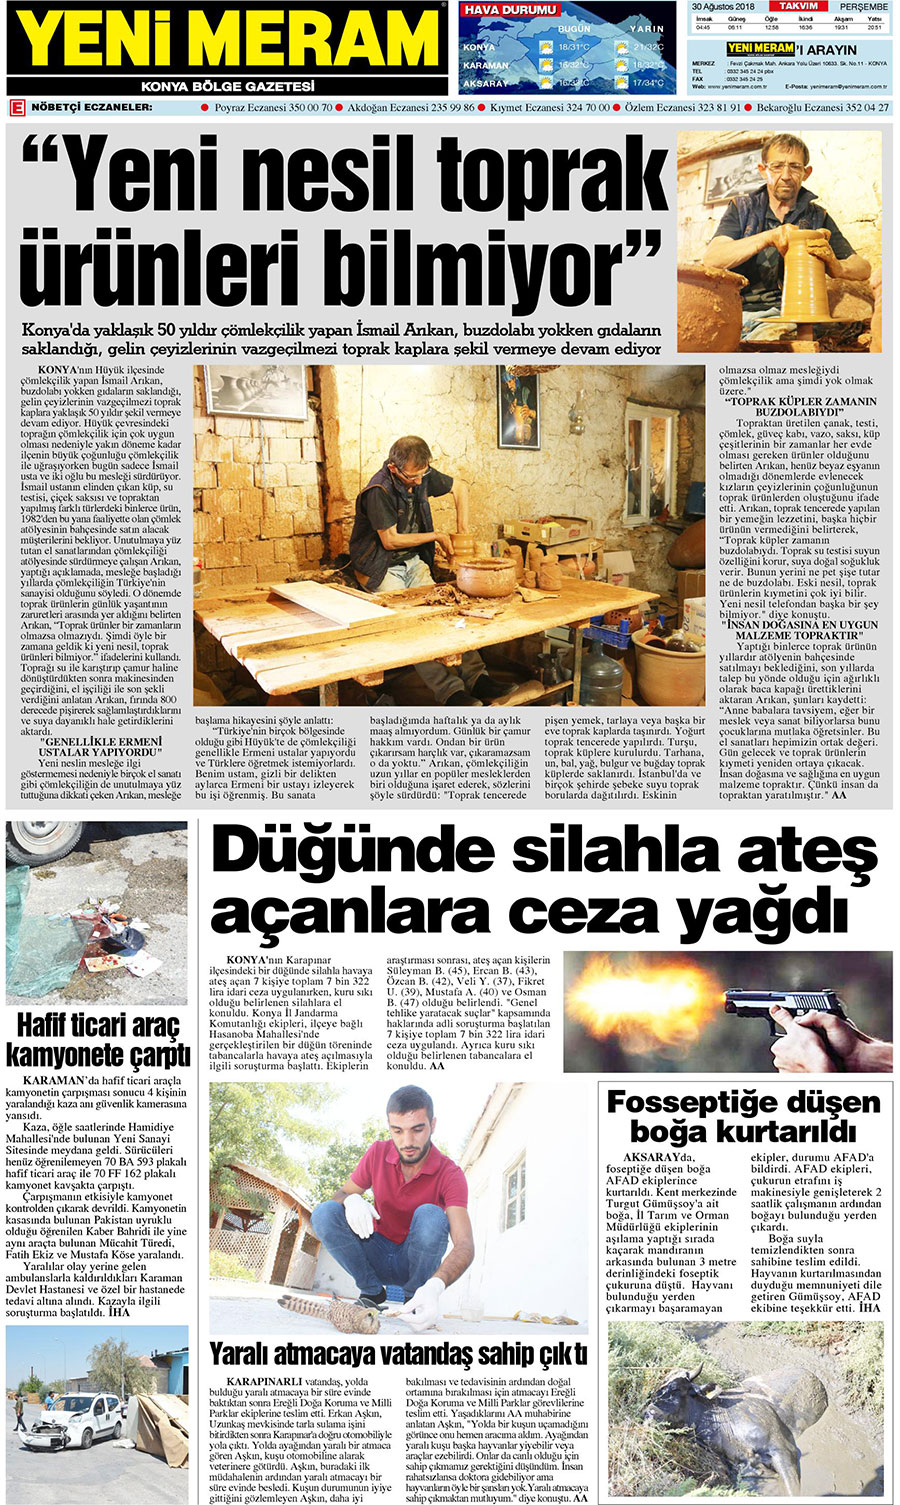 30 Ağustos 2018 Yeni Meram Gazetesi